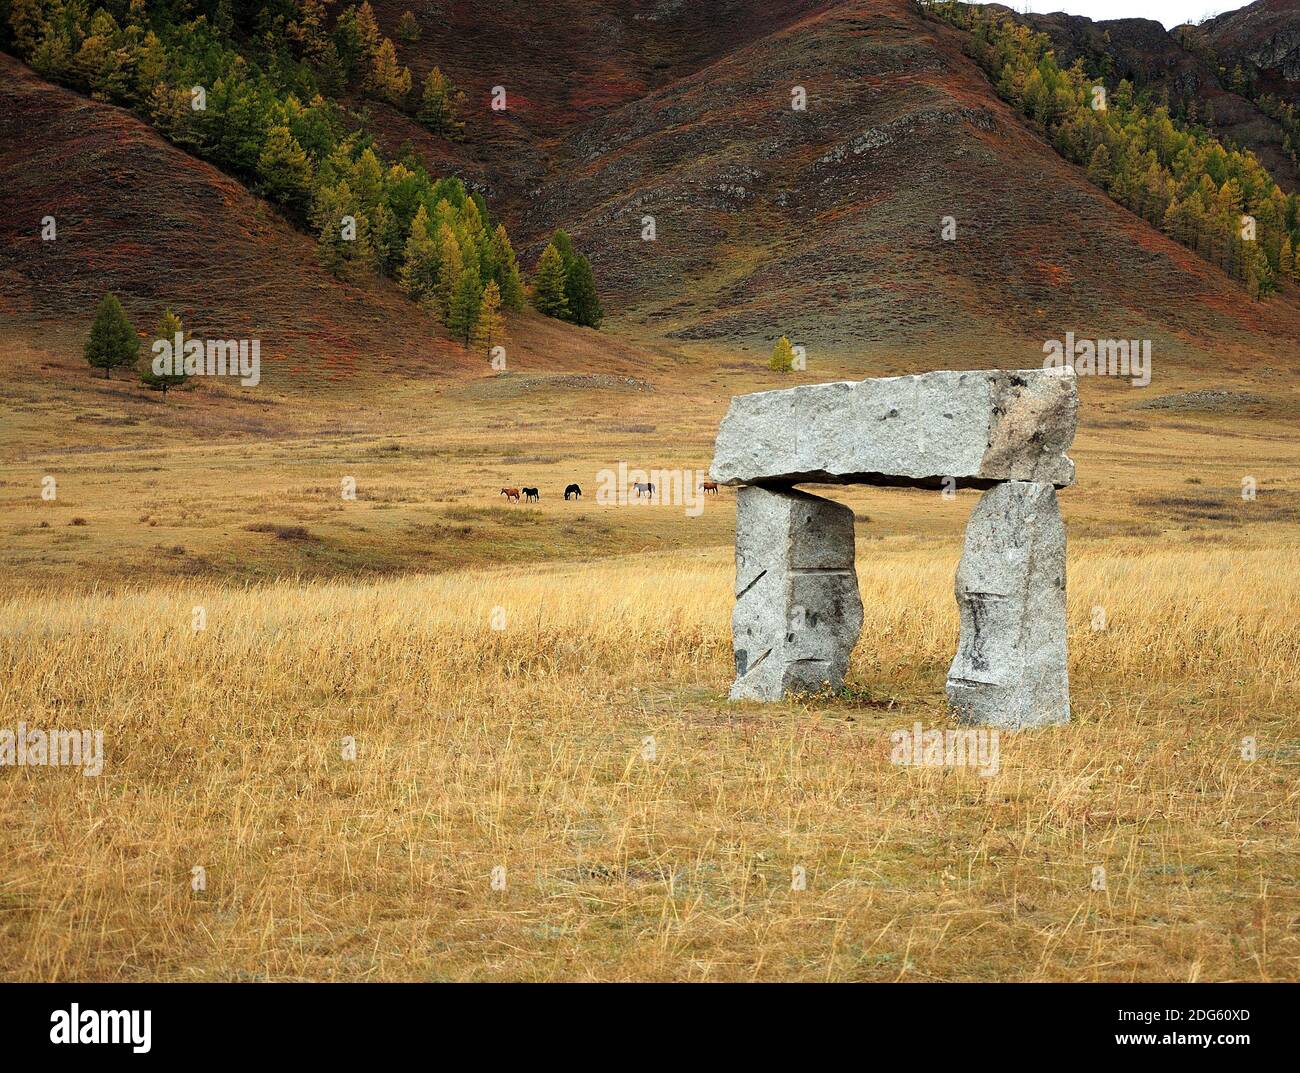 Un arco de piedra, una antigua estructura sagrada que se encuentra en la estepa otoñal al pie de una alta montaña. Karakol Valley, Altai, Siberia, Rusia. Foto de stock